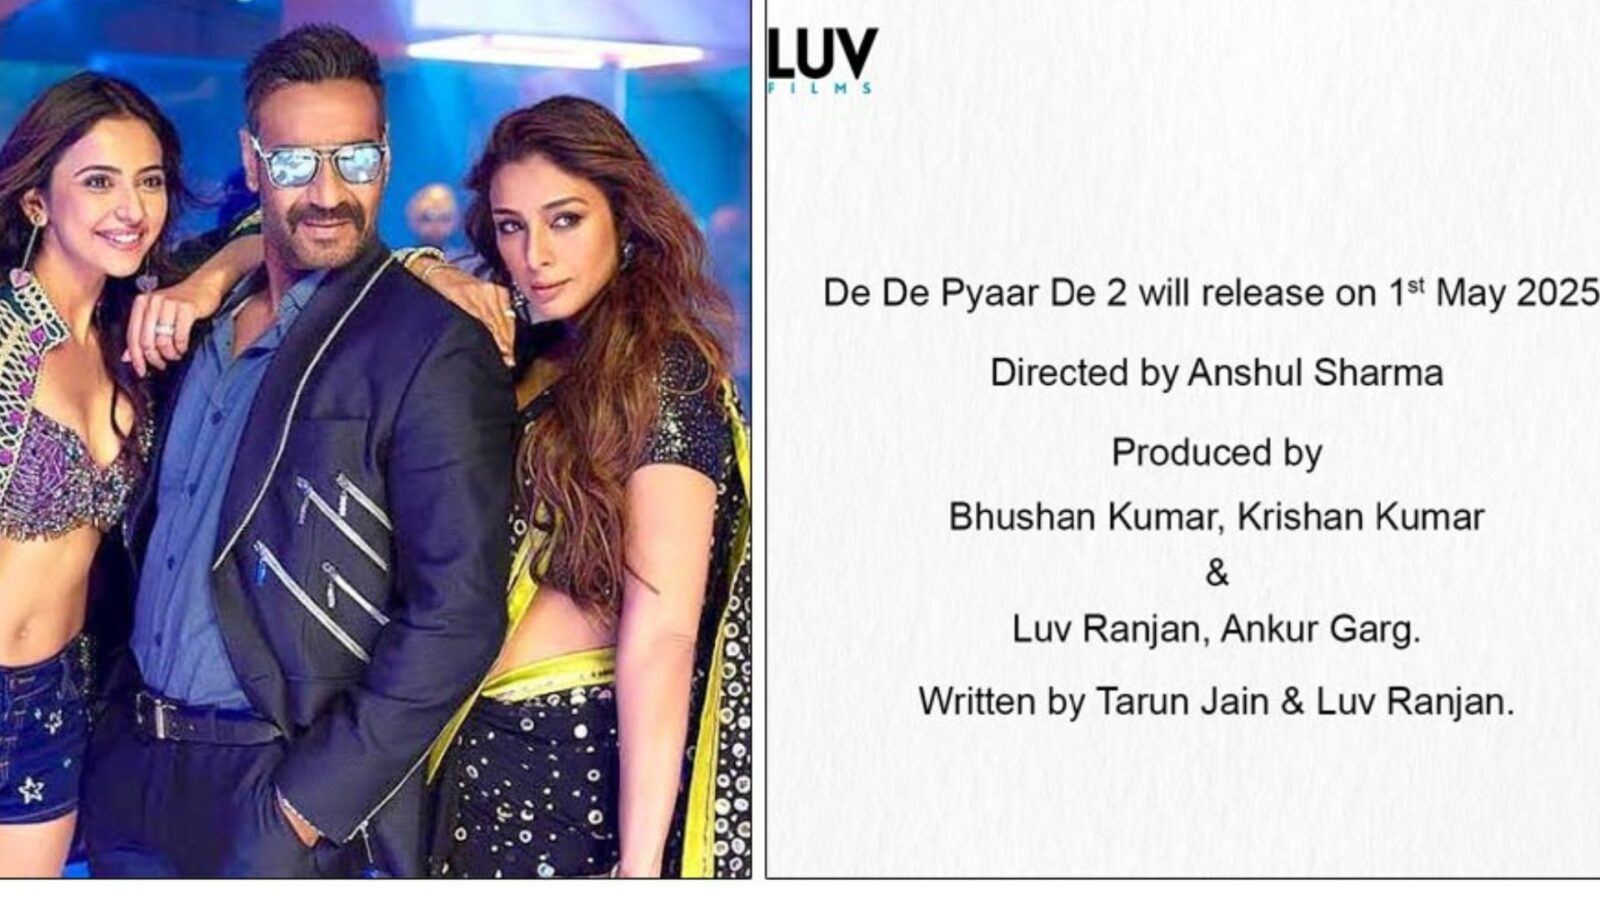 Luv Ranjan Announced De De Pyaar De 2, Will Release In May 2025